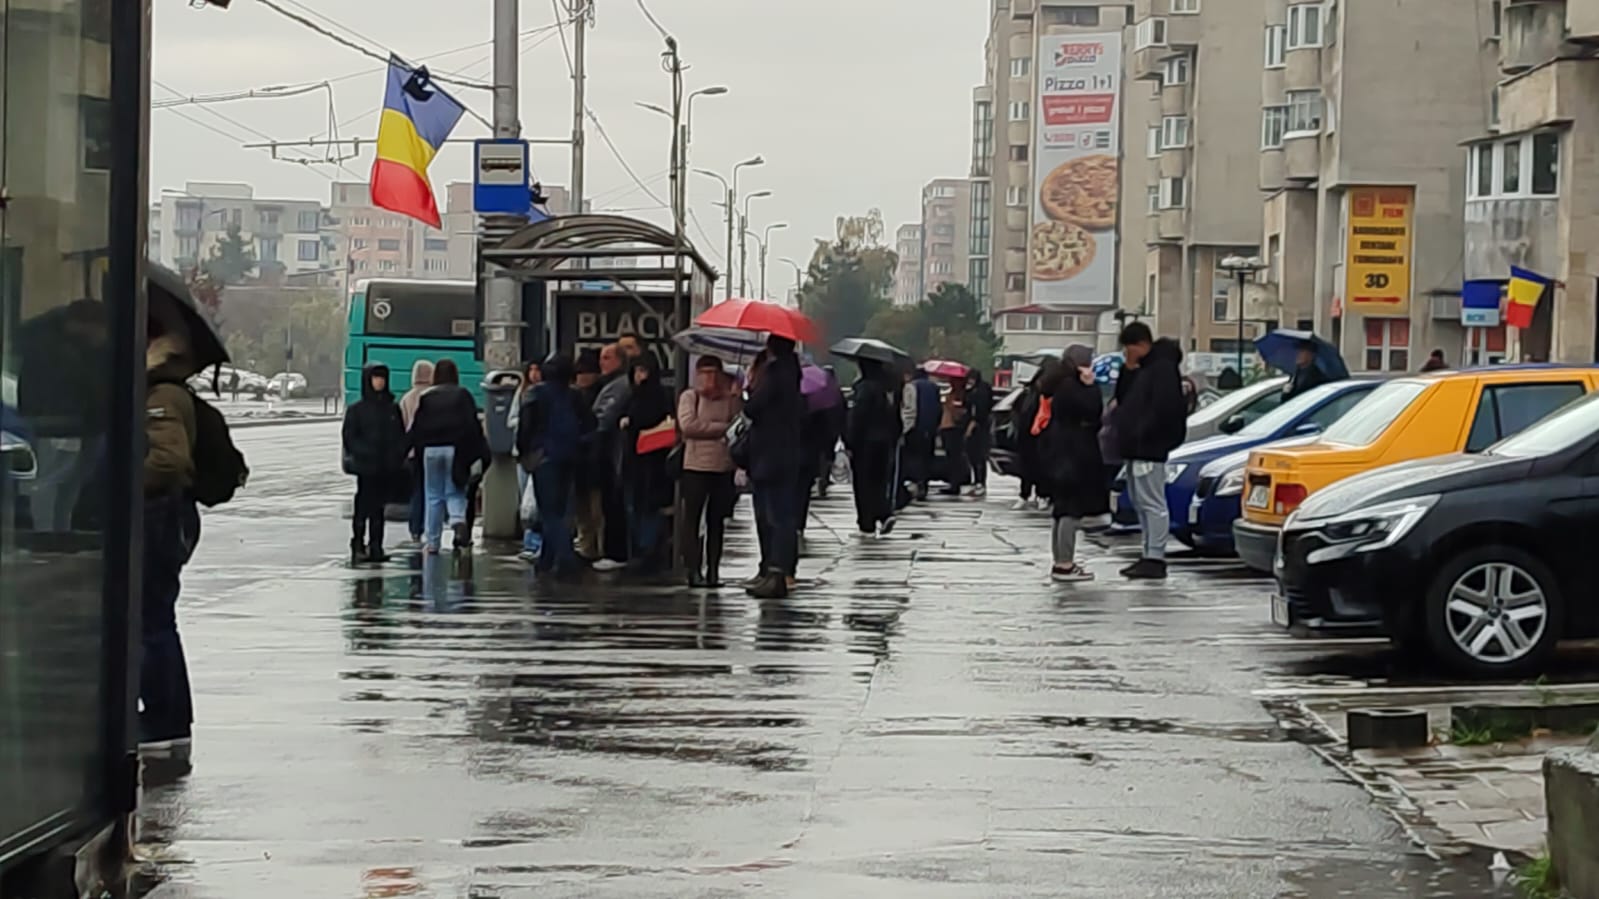 Vreme ploioasă în Cluj-Napoca / Foto: monitorulcj.ro